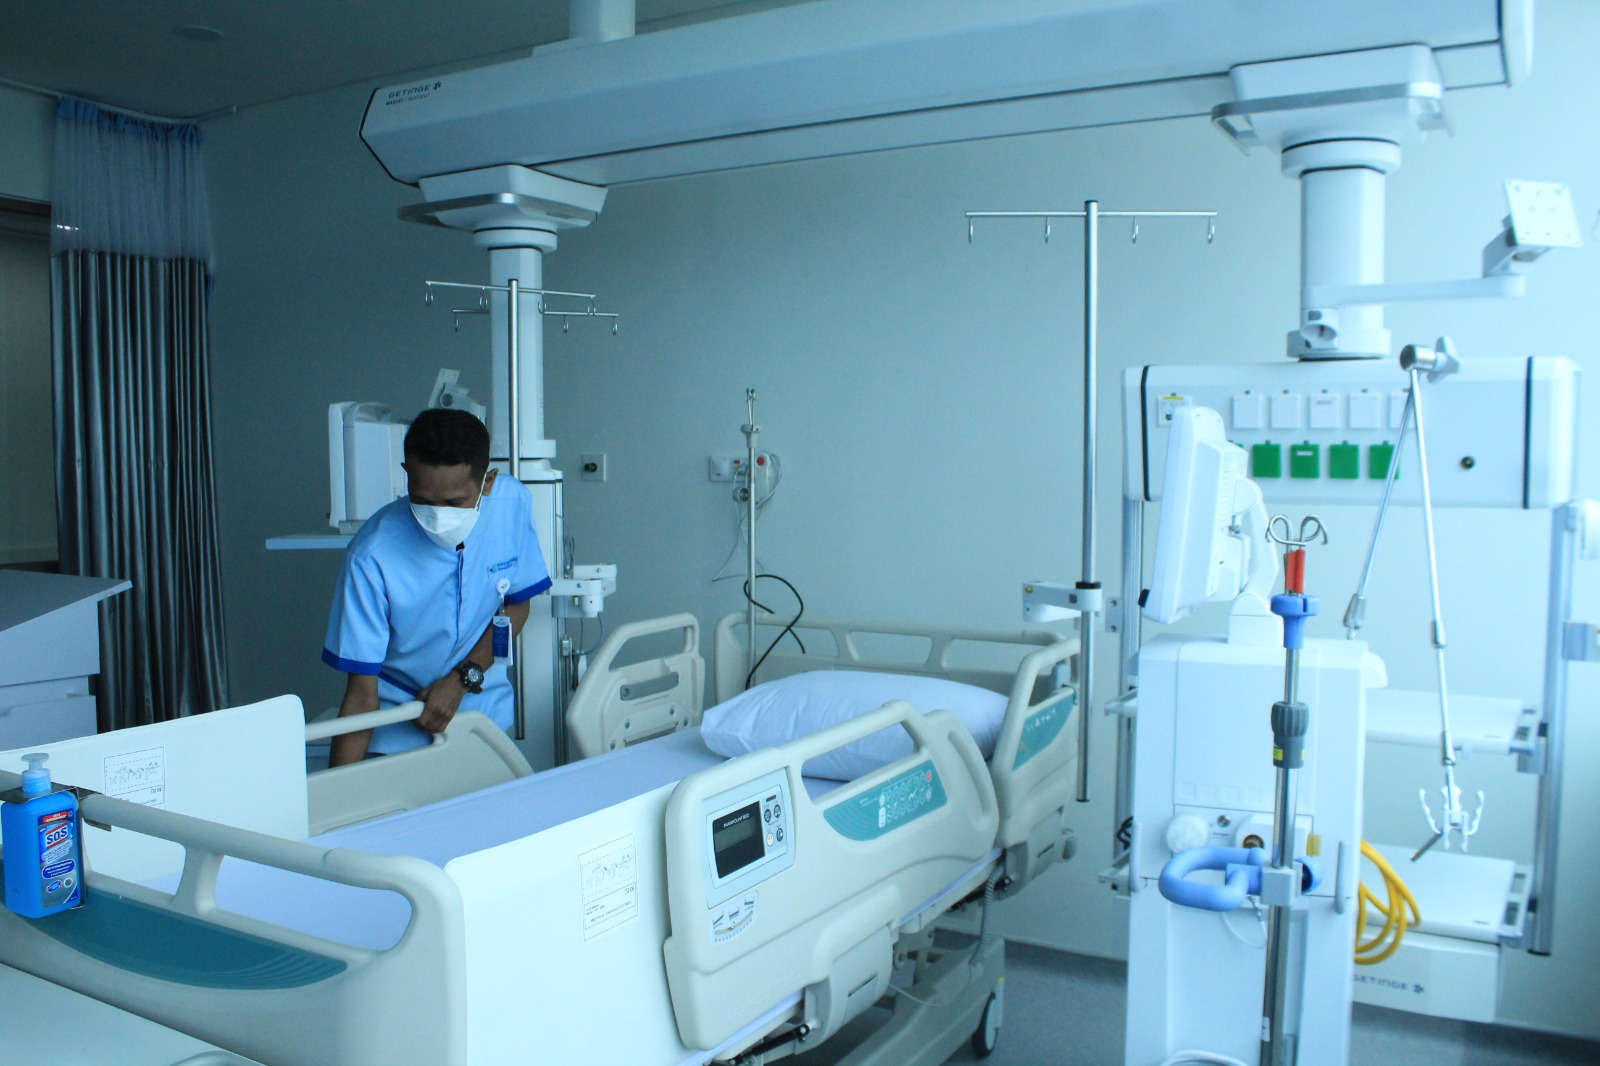 CANGGIH: Ruangan dan peralatan medis yang ada di RS Mayapada Kota Bandung. RS itu berkonsep green hospital. (HENDRIK MUCHLISON/JABAR EKSPRES)